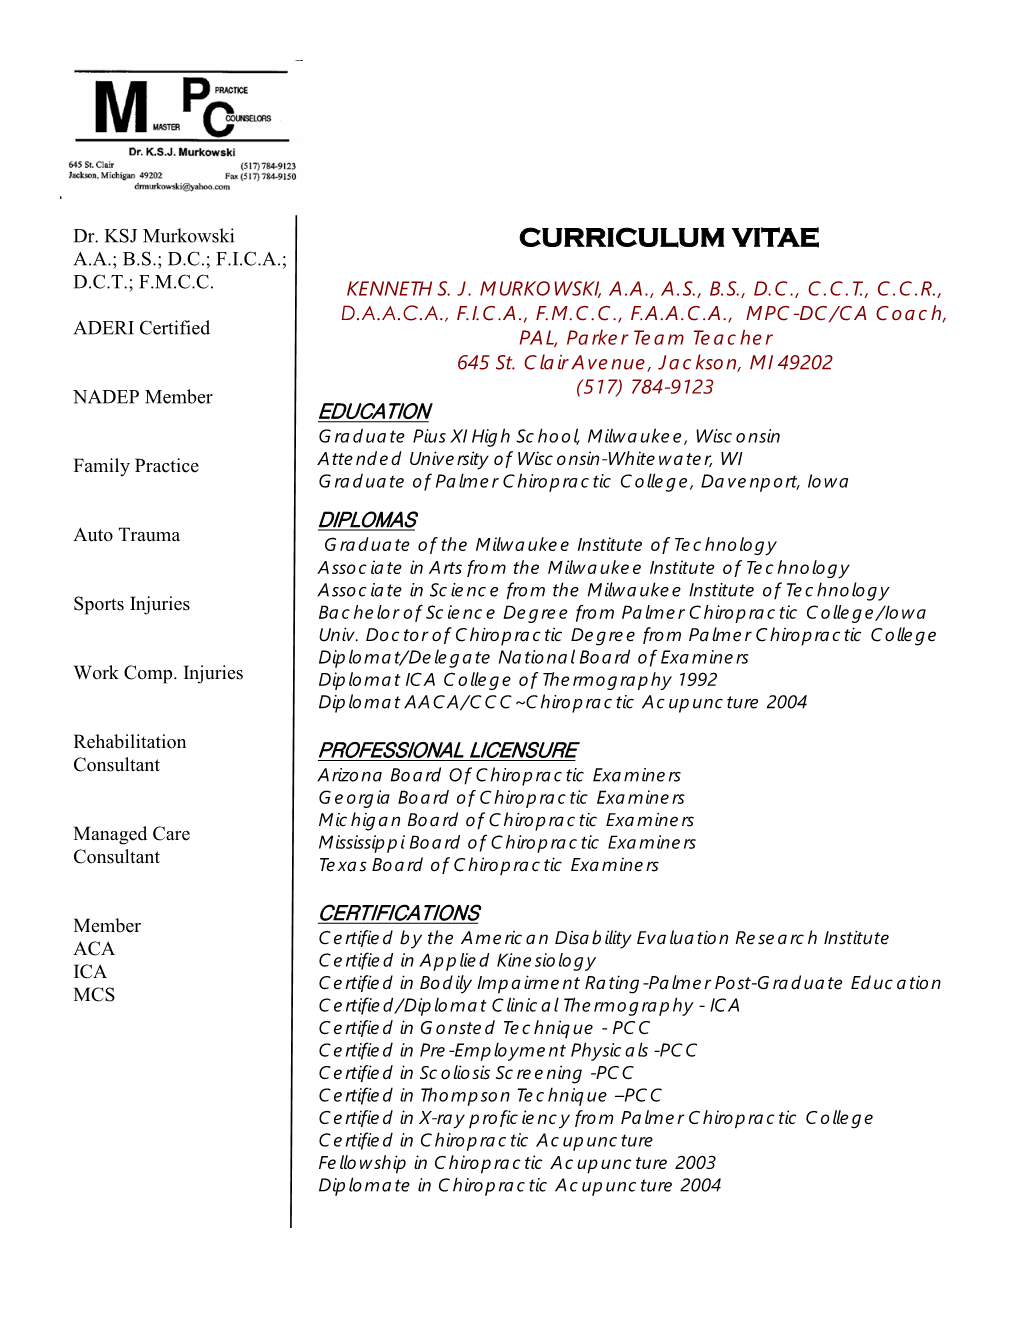 Curriculum Vitae A.A.; B.S.; D.C.; F.I.C.A.; D.C.T.; F.M.C.C